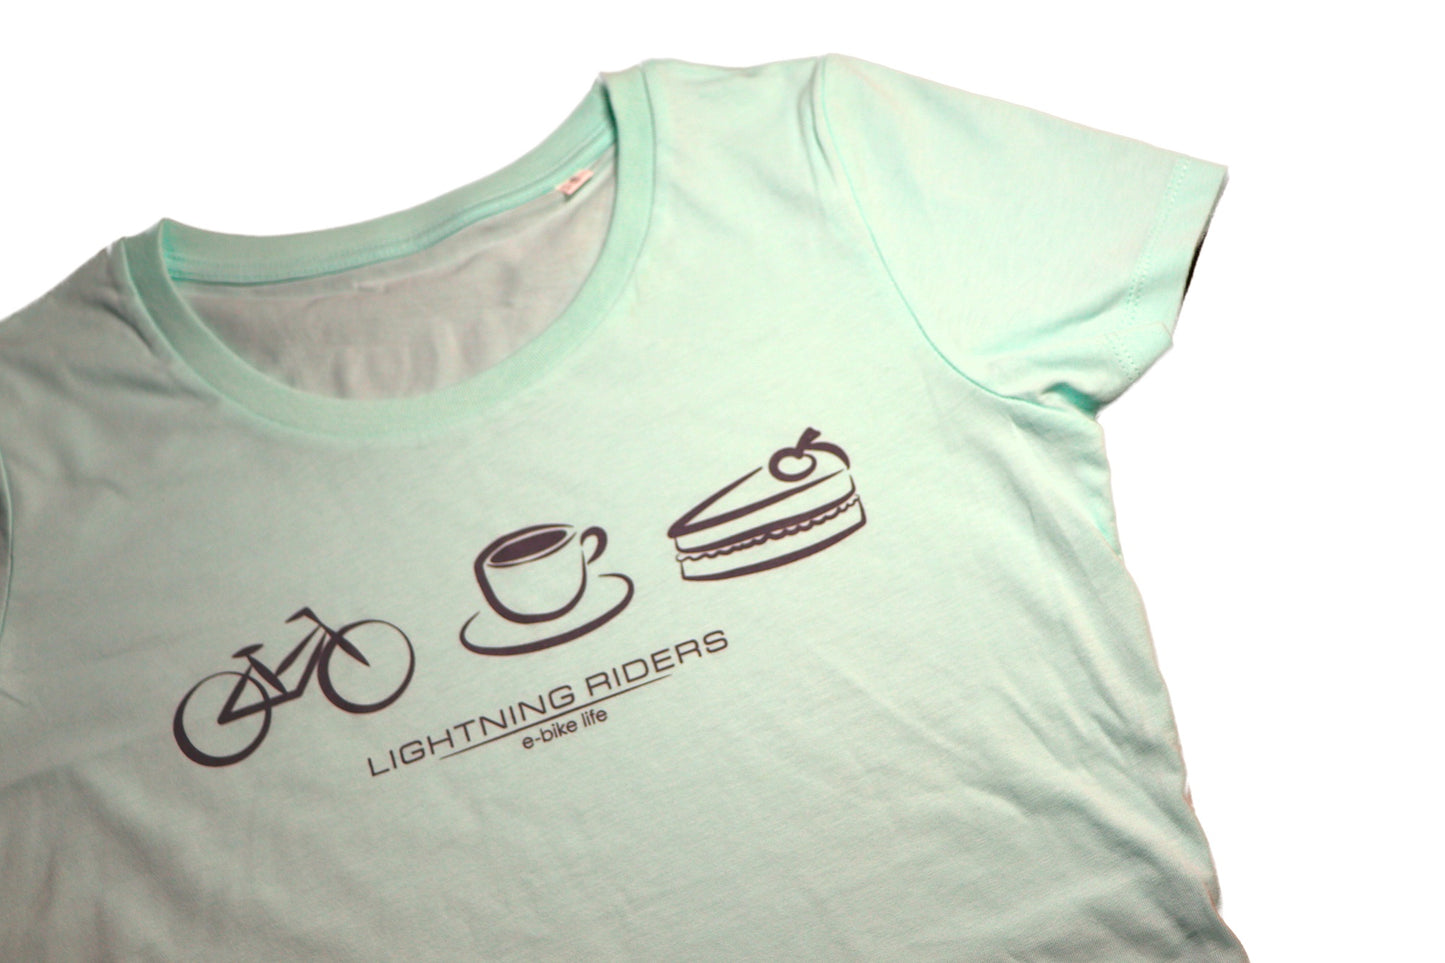 Ladies Fit E-Bike, Coffee, Cake T-Shirt